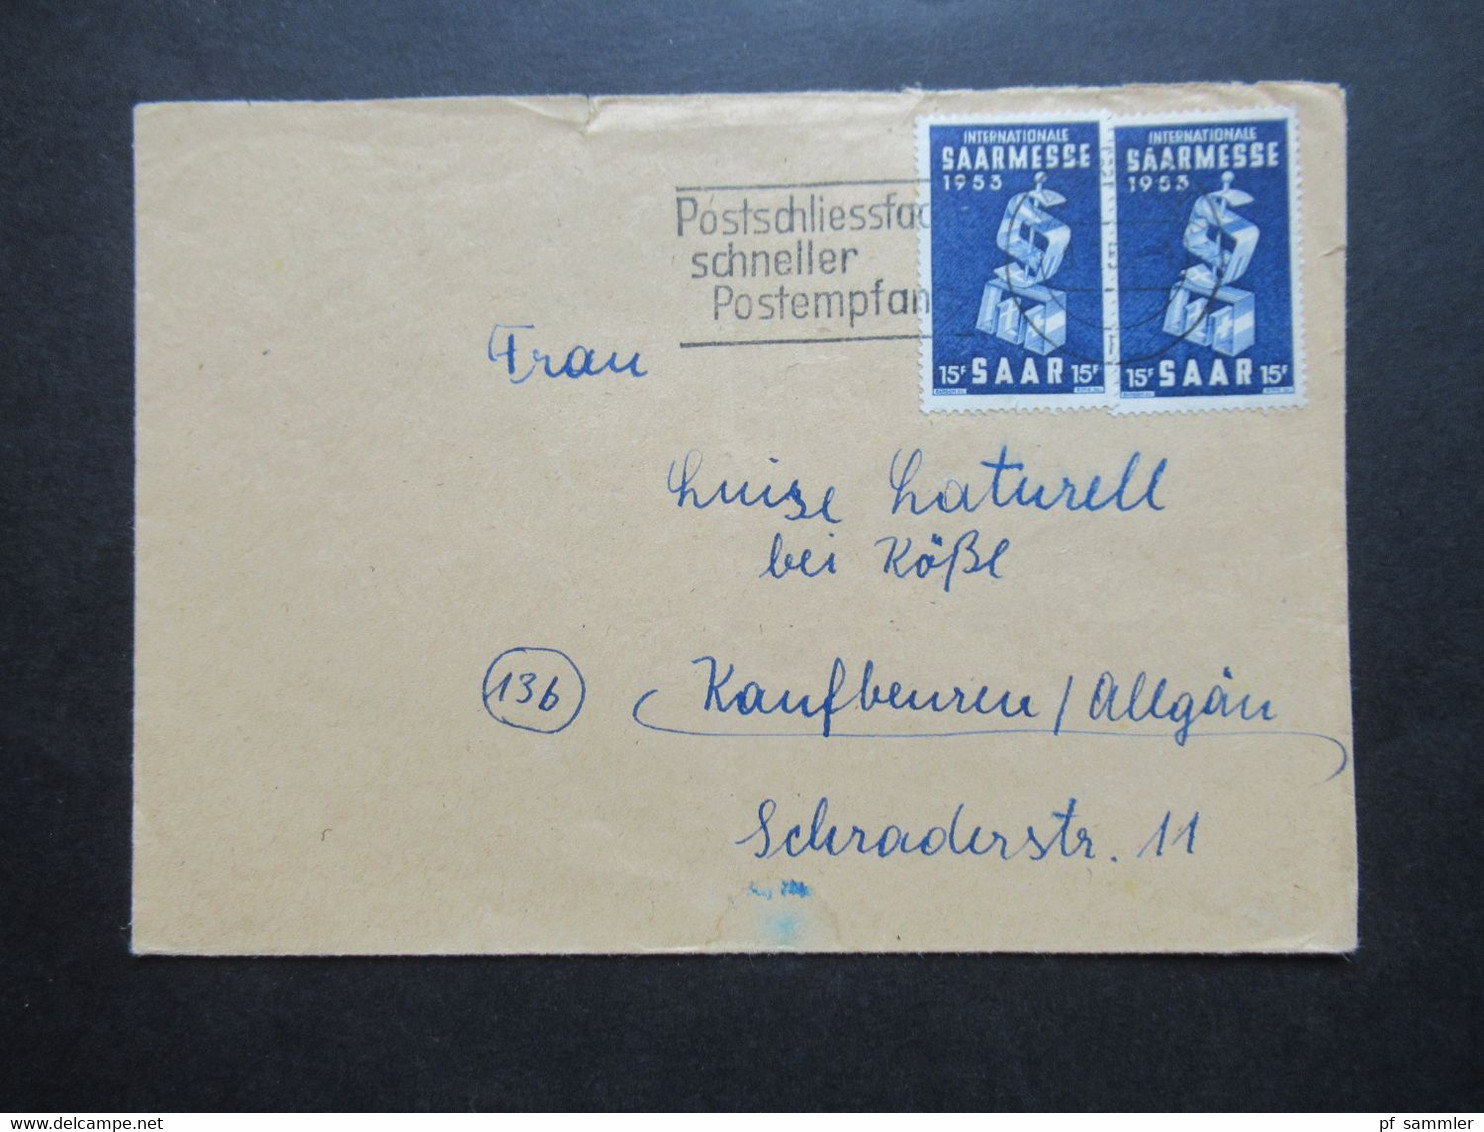 Saarland 1953 Nr.341 (2) MeF Internationale Saarmesse Werbestempel Postschliessfach Schneller Postempfang - Lettres & Documents